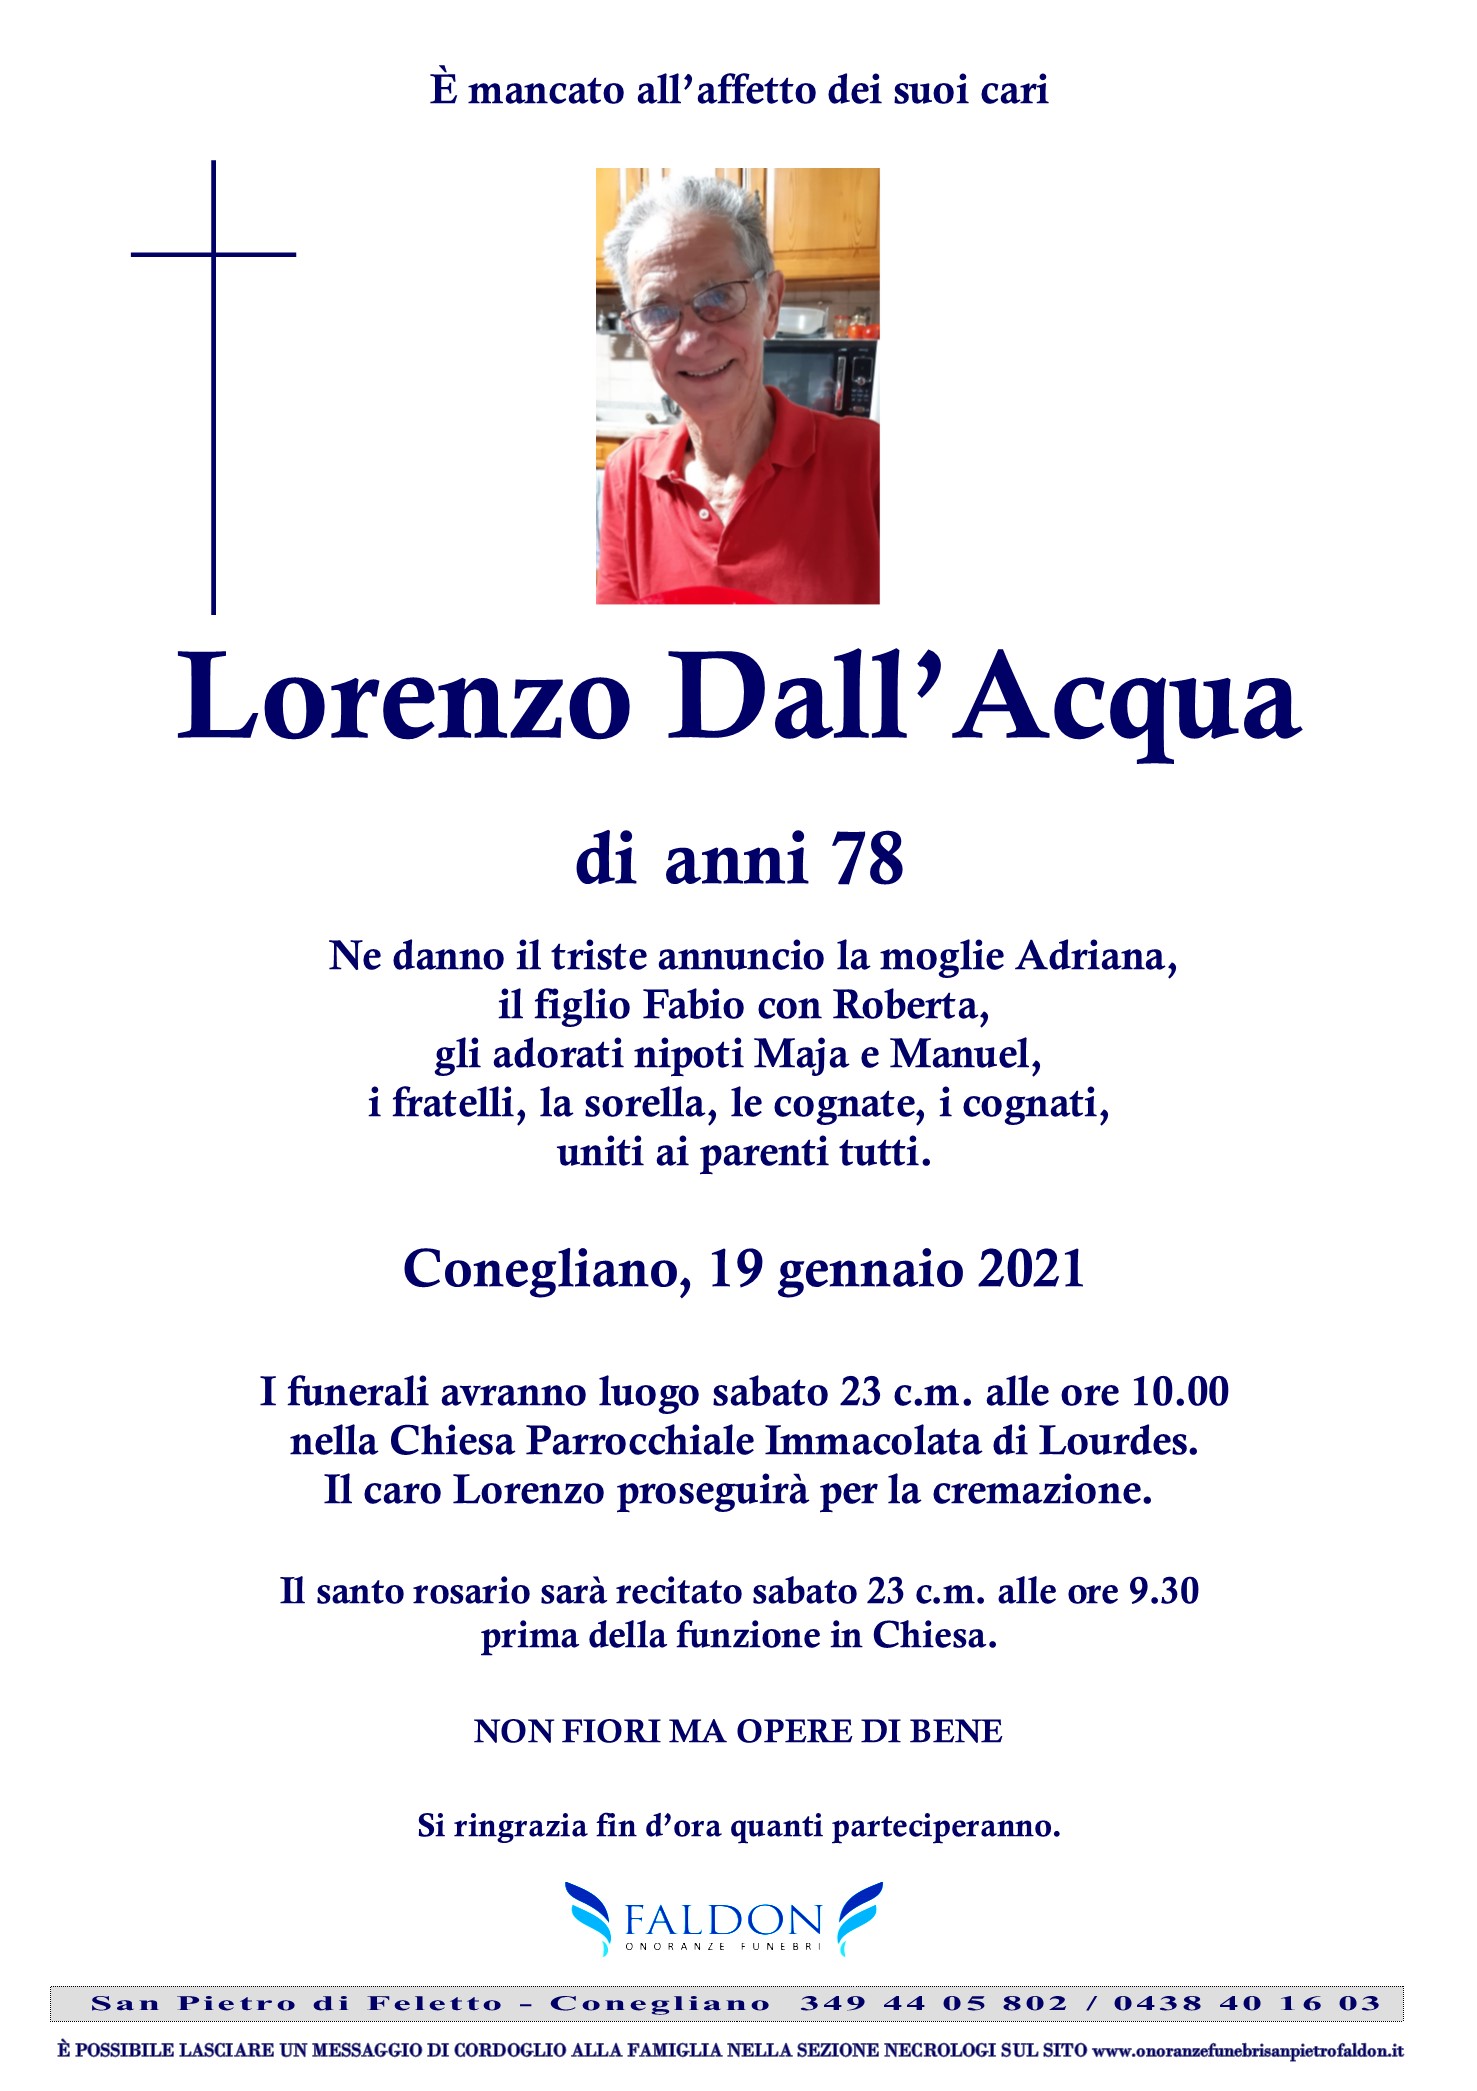 Lorenzo Dall’Acqua